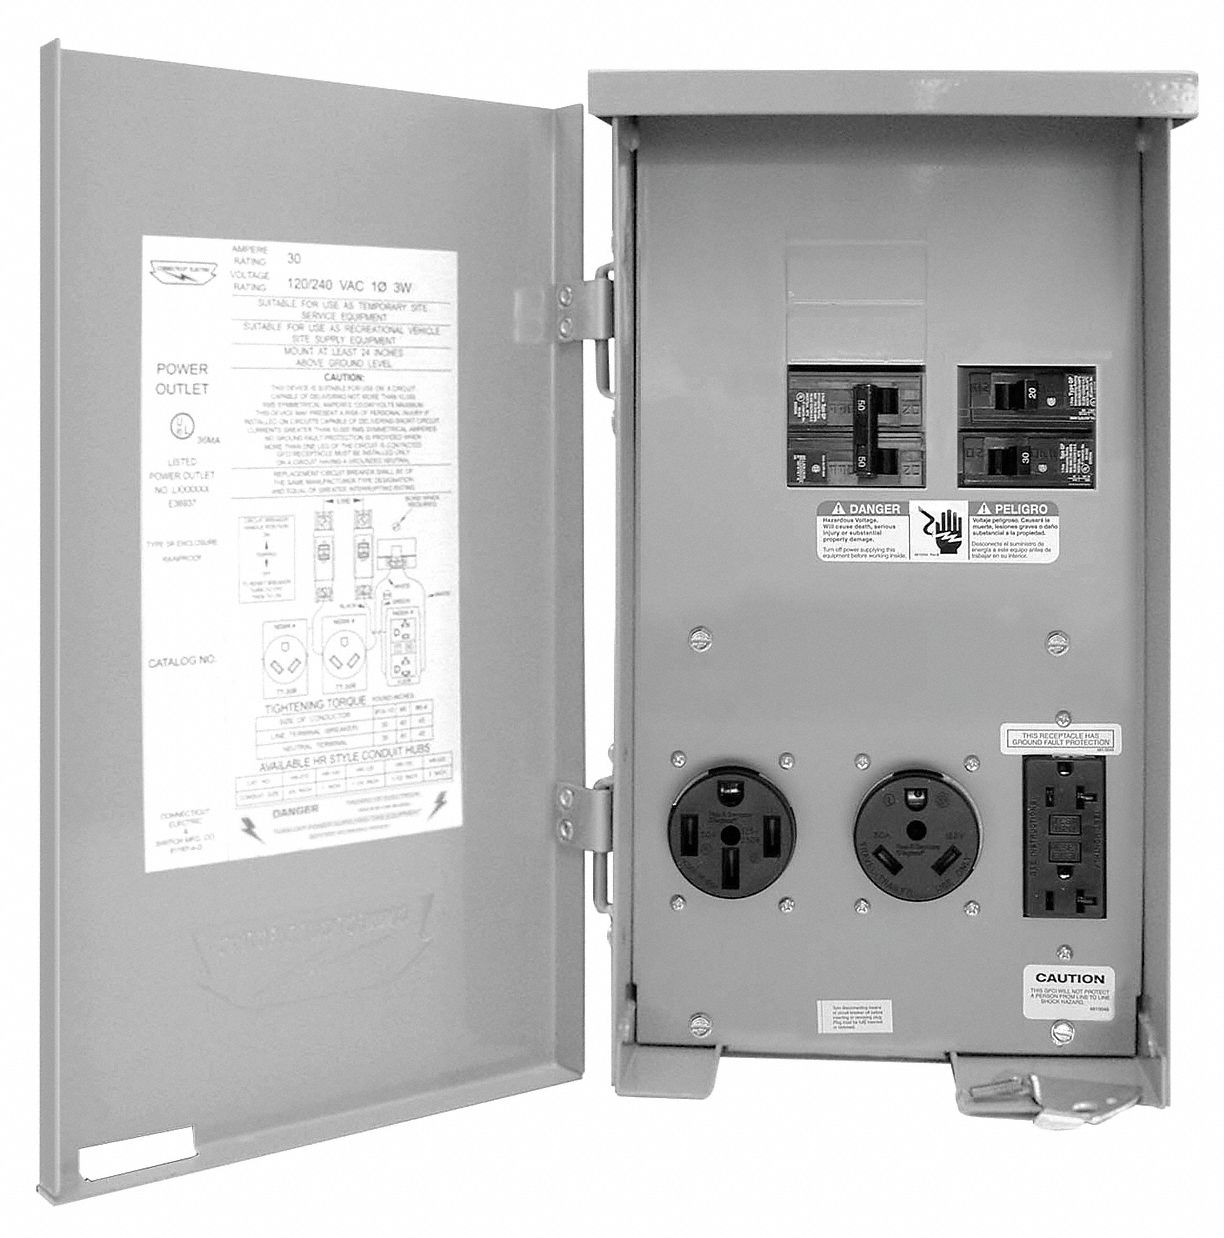 Power Outlets: NEMA 5-20R2 GFCI, TT-30 travel trailer receptacle, NEMA 50. Breakers:1P 20A, 1P 30A, 